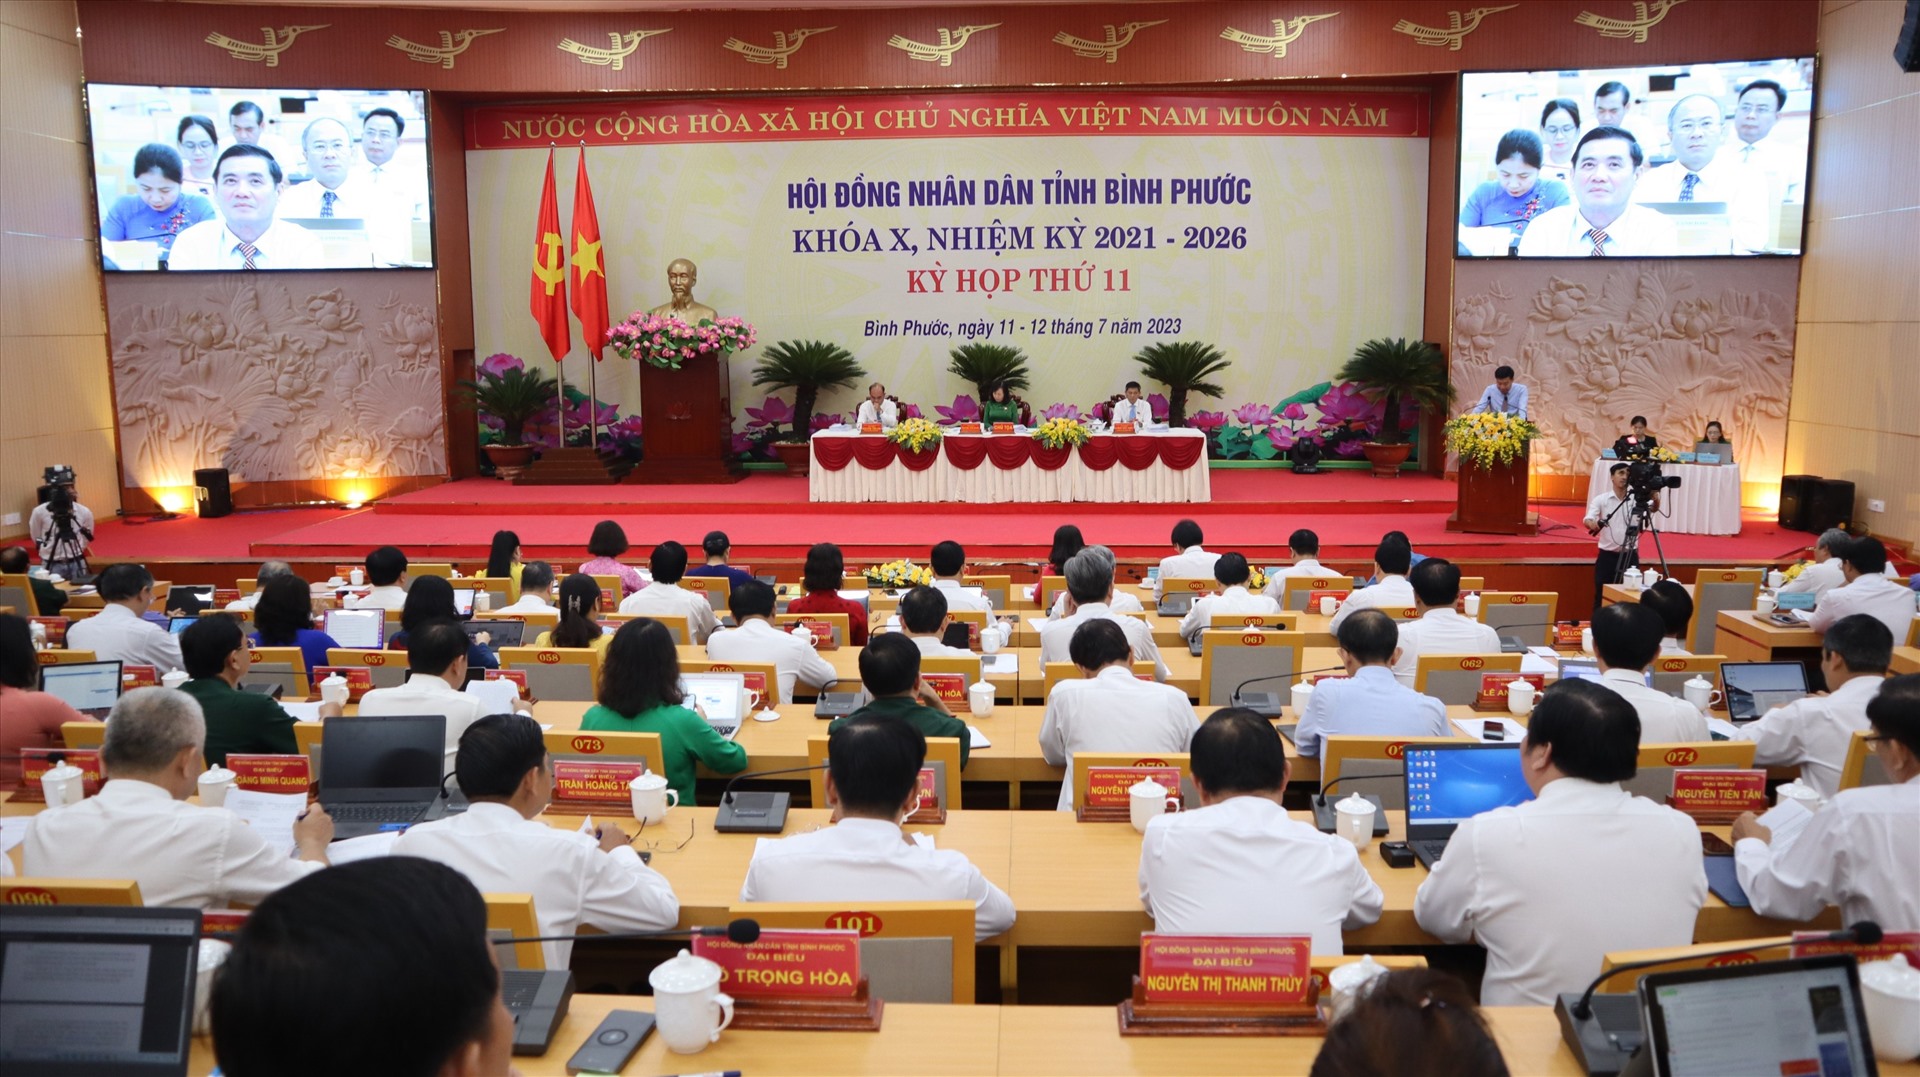 Kỳ họp HĐND tỉnh Bình Phước khóa X, nhiệm kỳ 2021 – 2026. Ảnh: Dương Bình